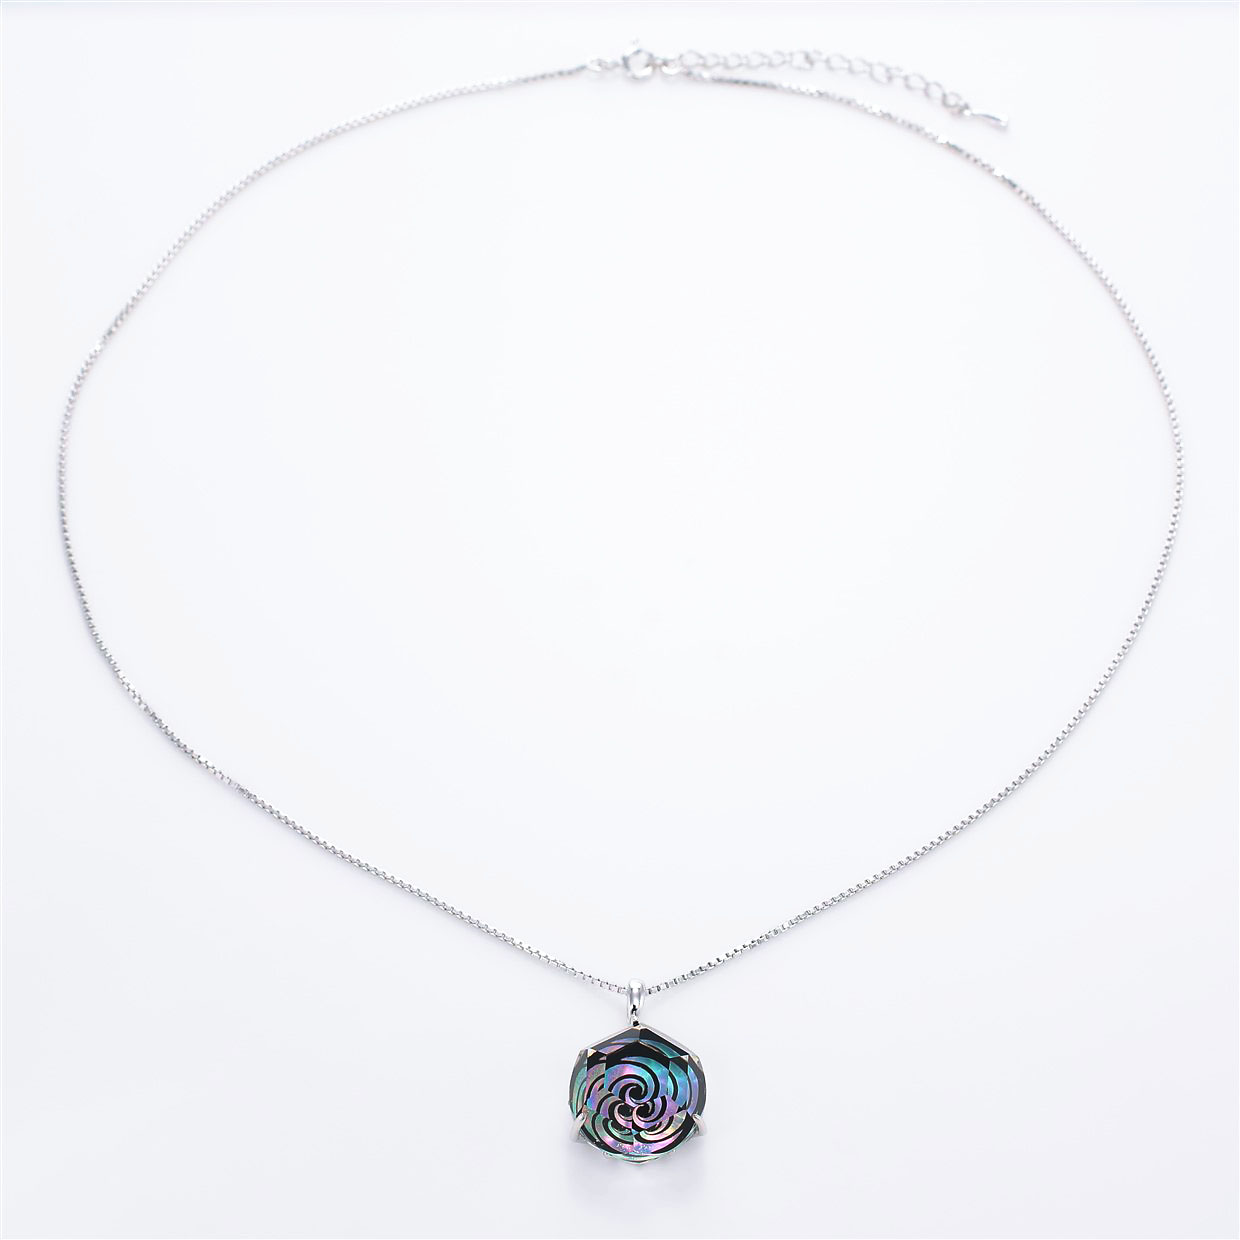 宝石クォーツ・水晶を使った和風のデザインが特徴的な和の彩ネックレス/ペンダントの商品写真です。型番：CR201011-01~02 画像その1